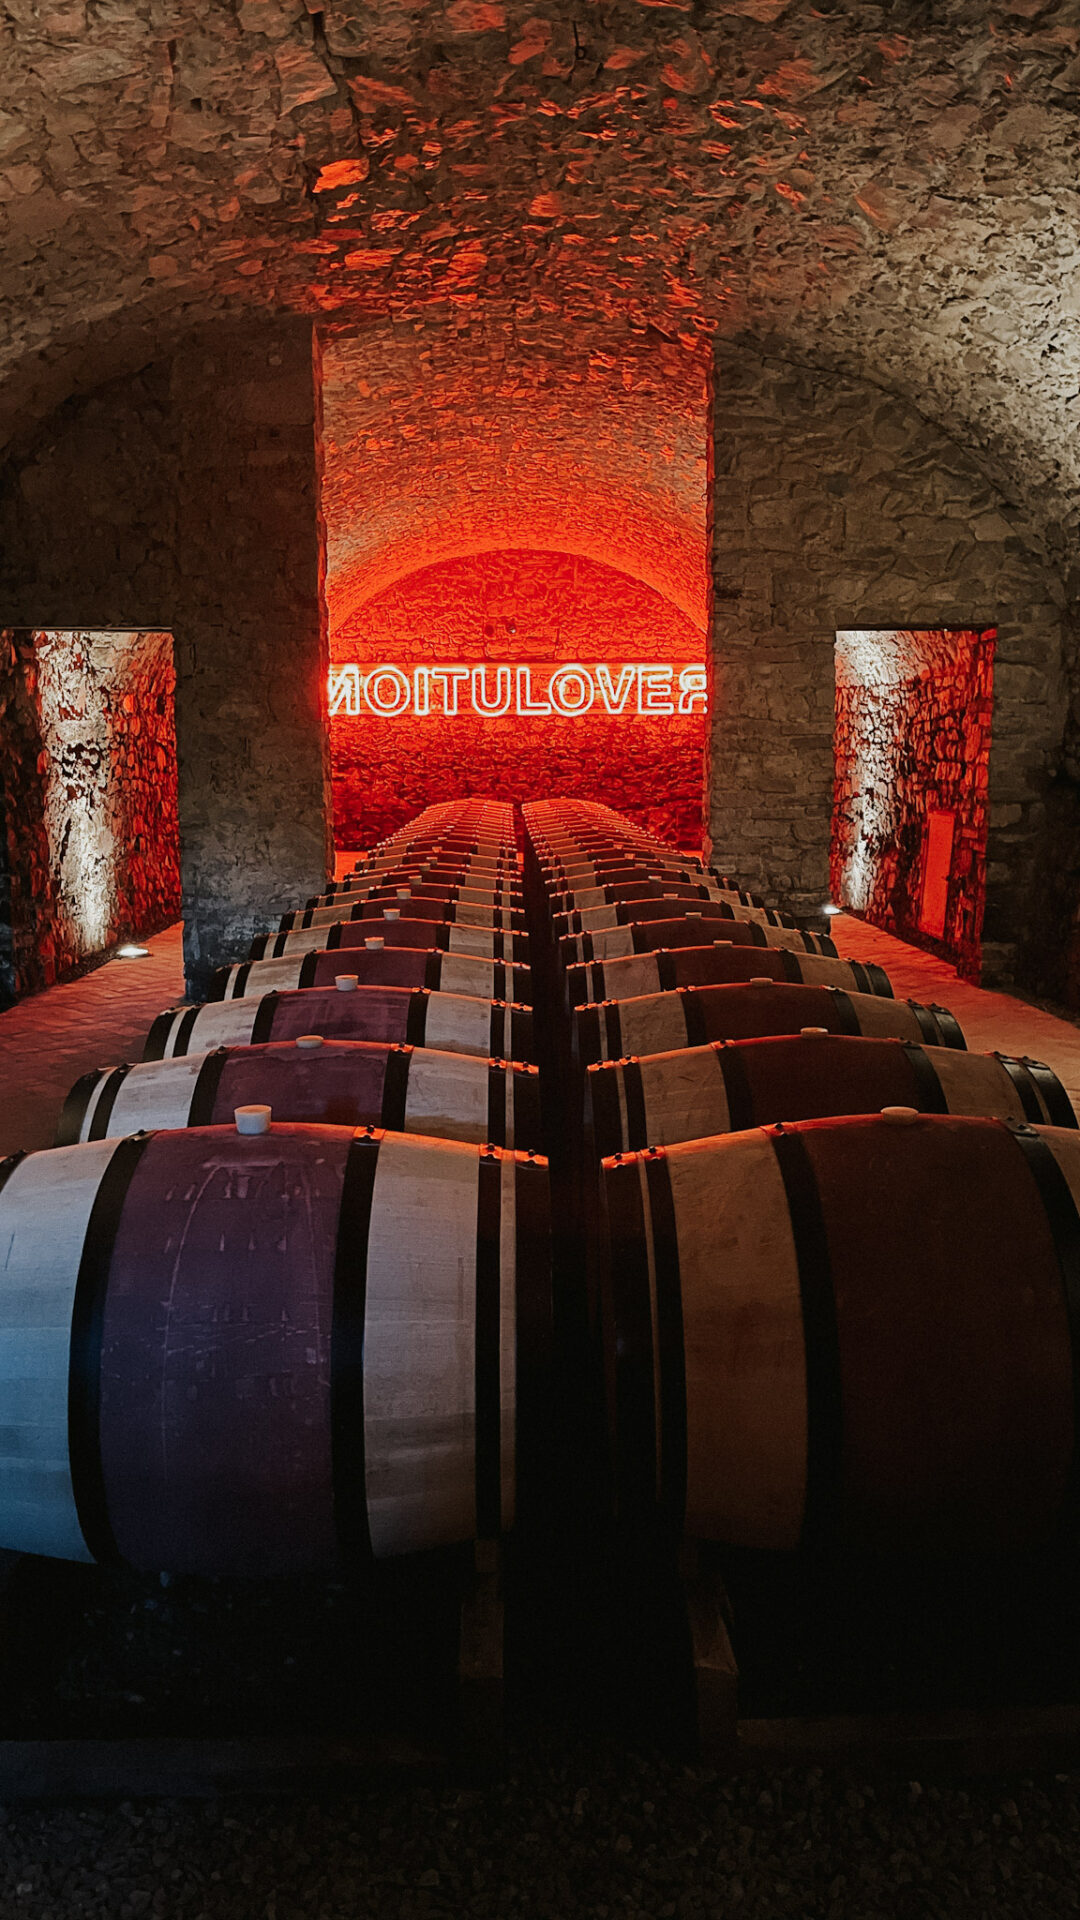 Castello di Ama winery art